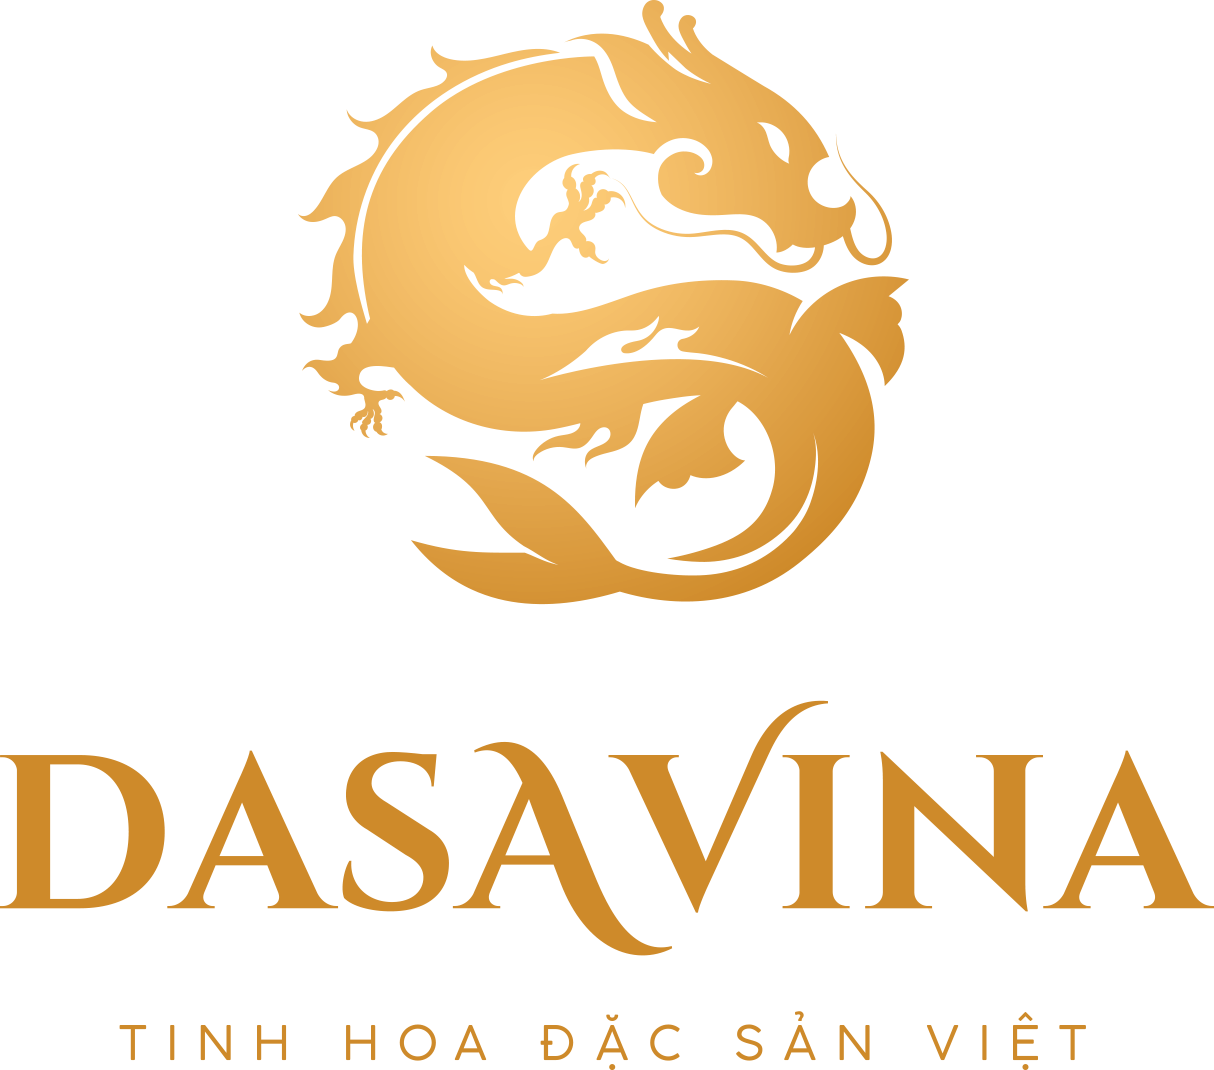 DASAVINA – Thương hiệu đặc sản cao cấp, hội tụ tinh hoa đặc sản Việt (Theo HVNCLC)